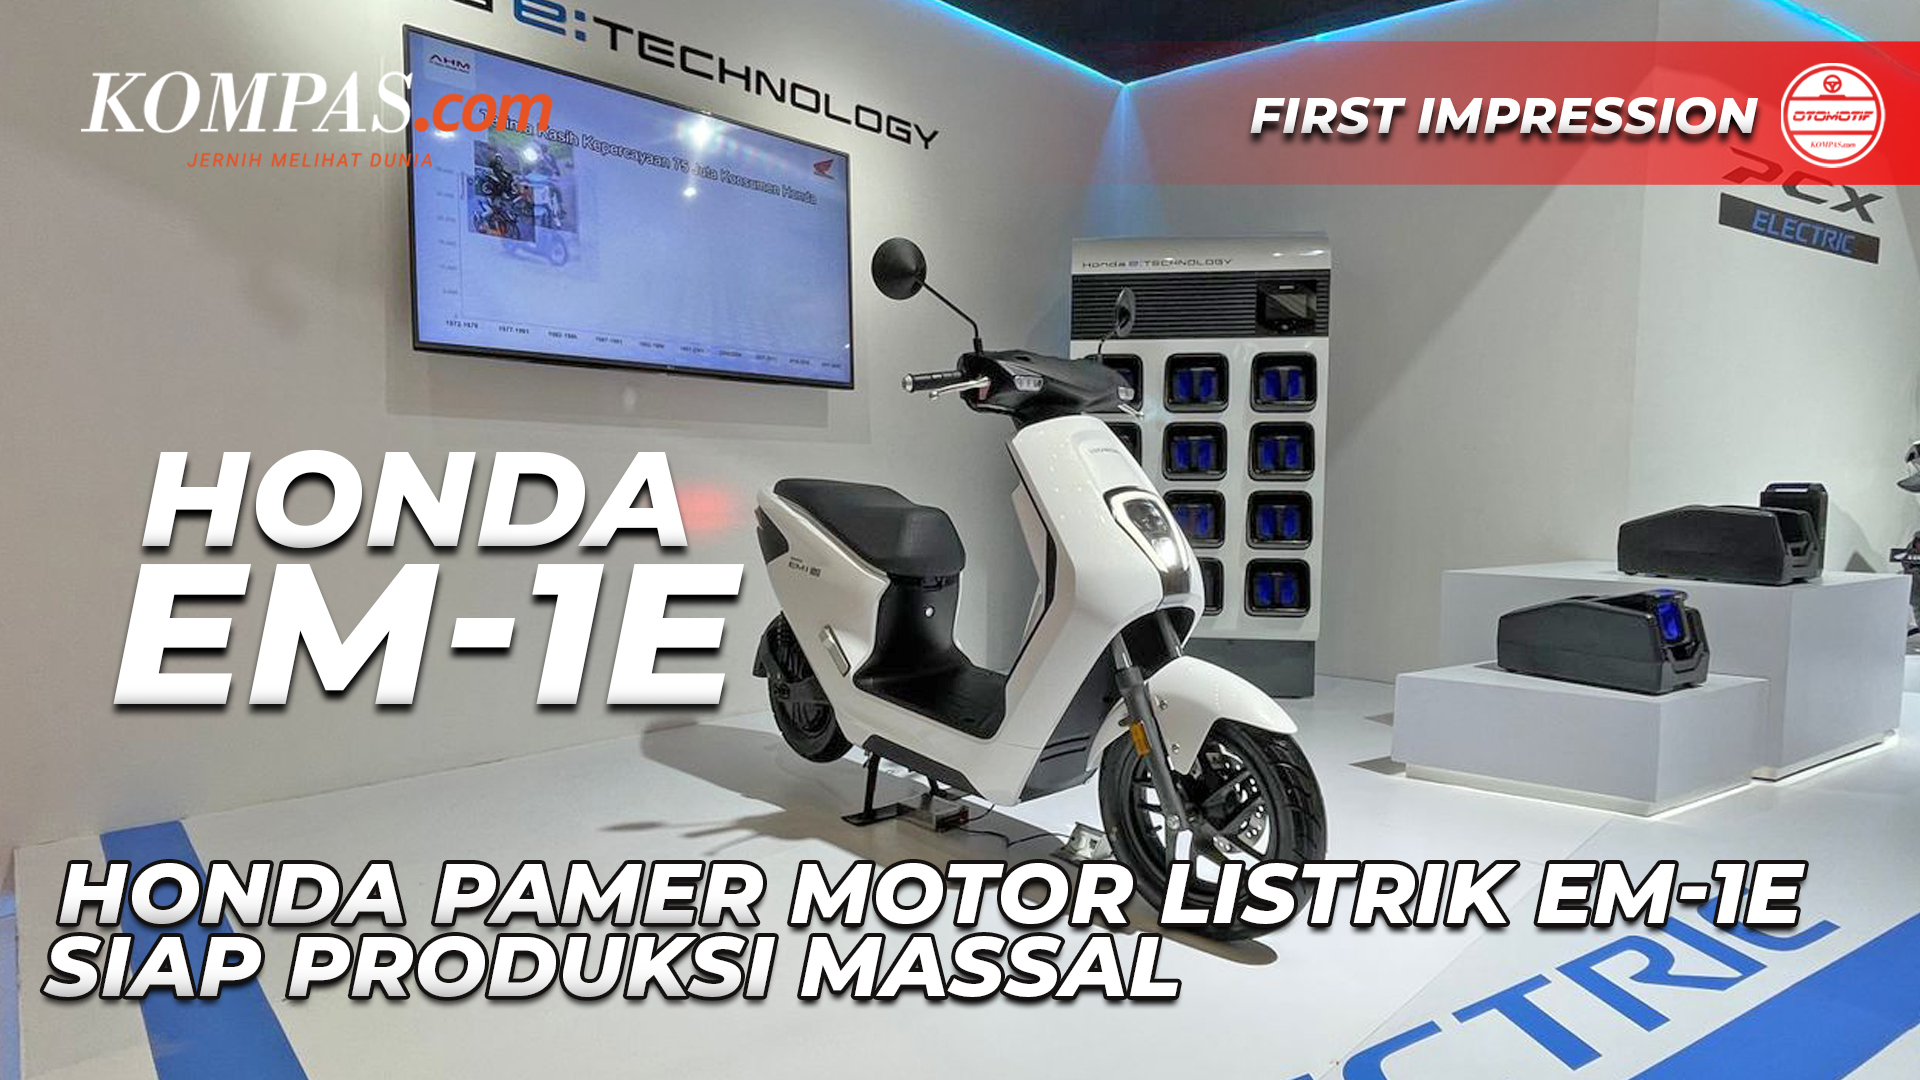 FIRST IMPRESSION | HONDA EM-1E| Honda Pamer Motor Listrik EM-1E Siap Produksi Massal